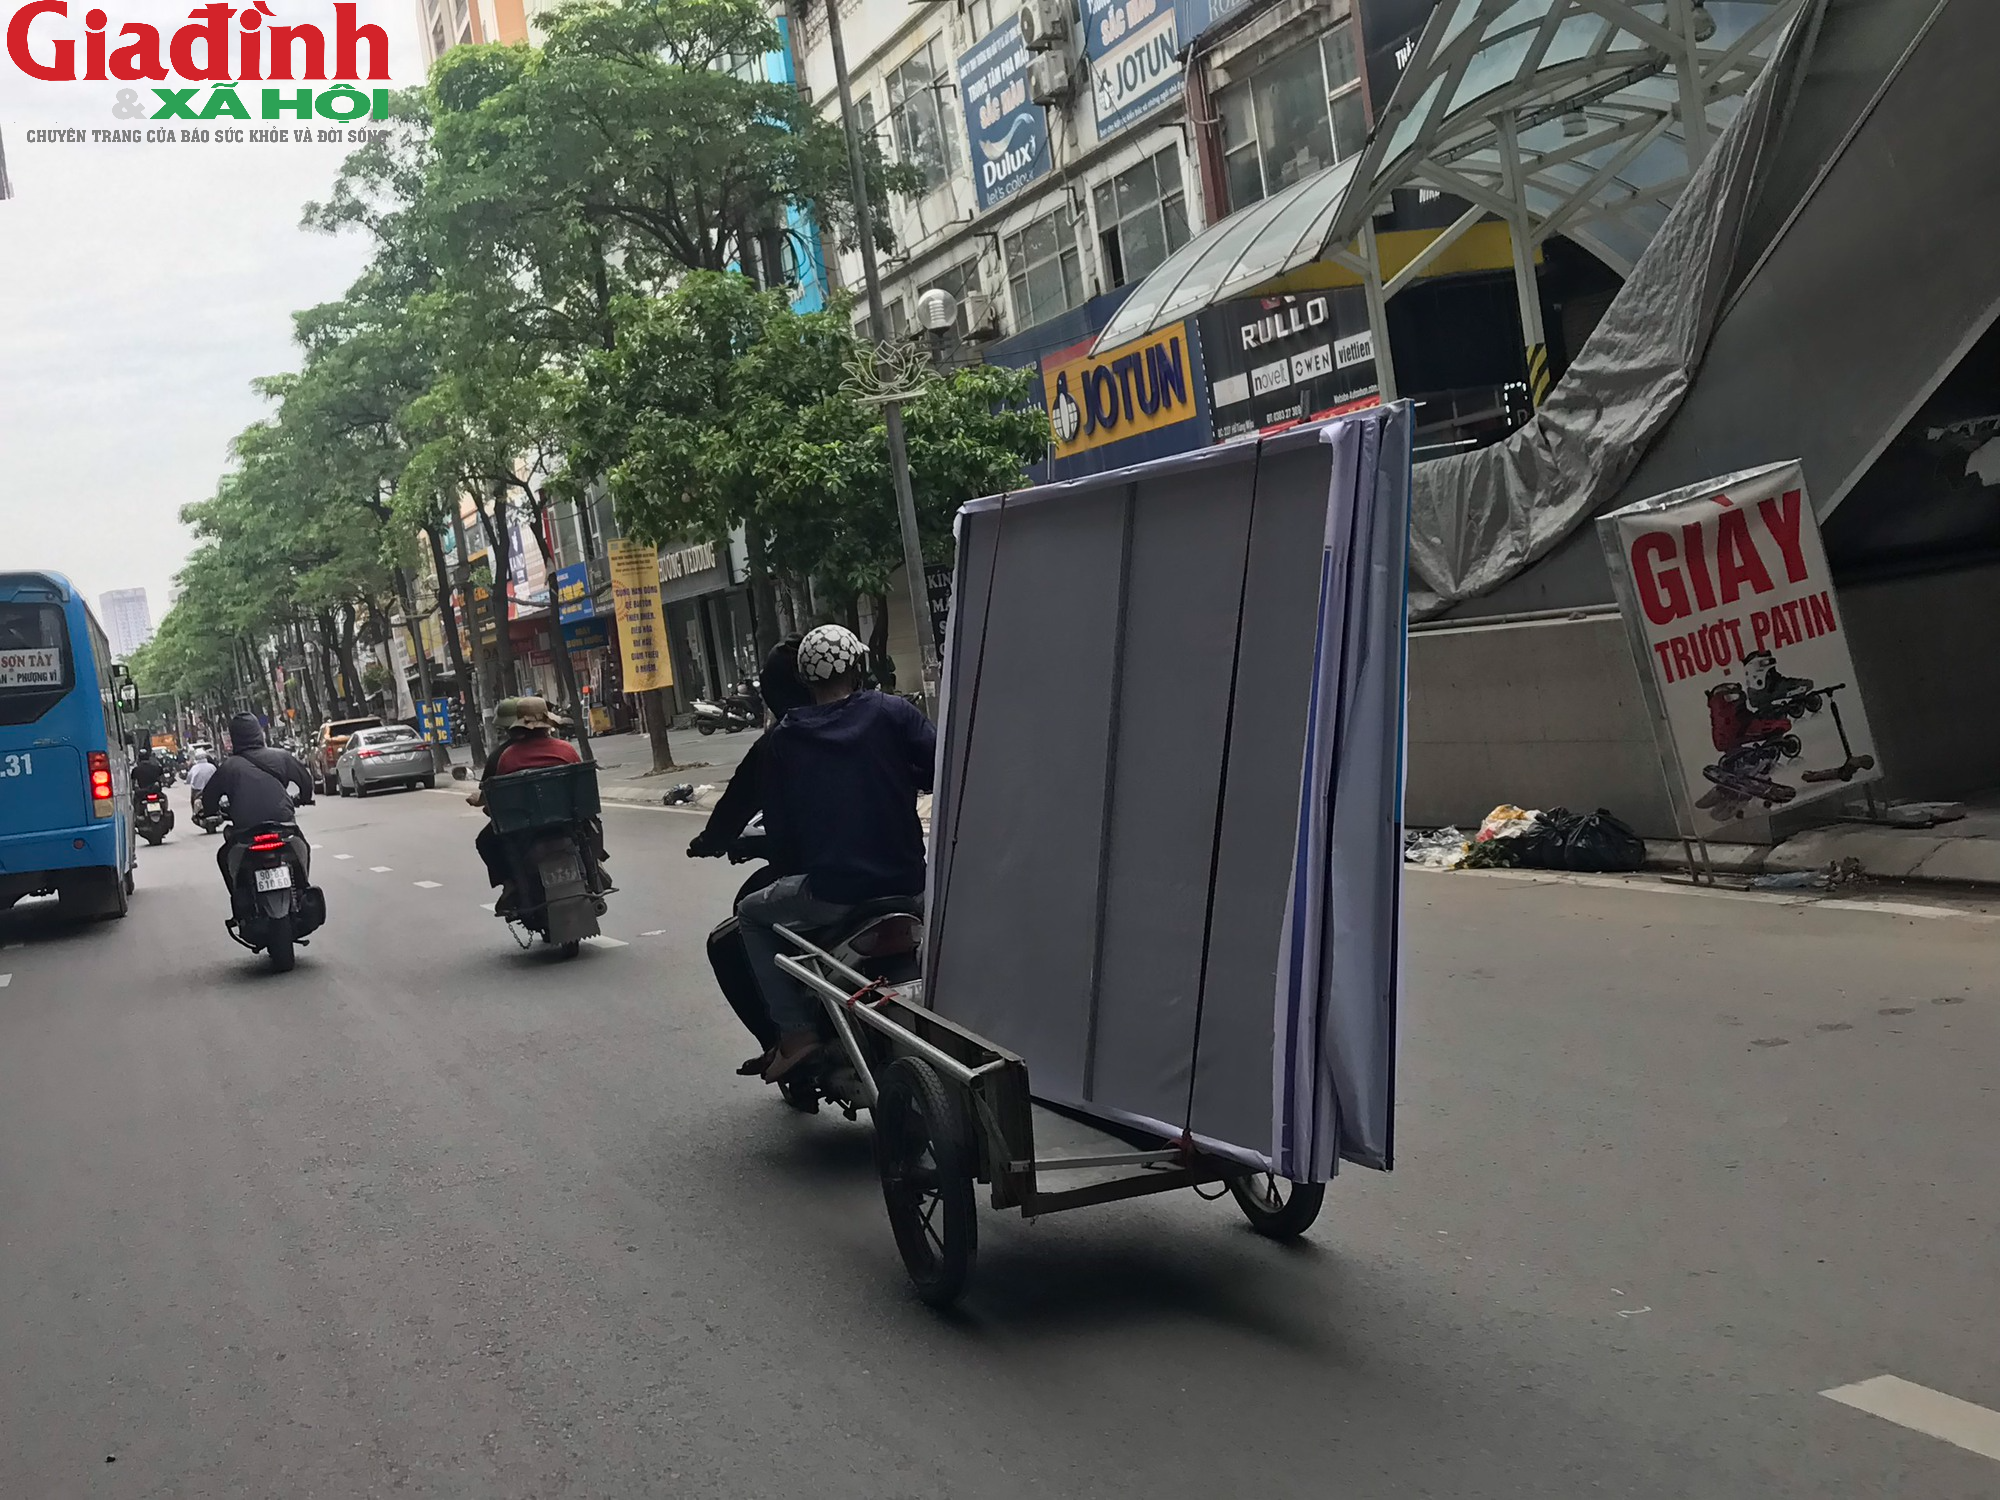 Ám ảnh với xe tự chế lưu thông trên đường phố Hà Nội - Ảnh 5.